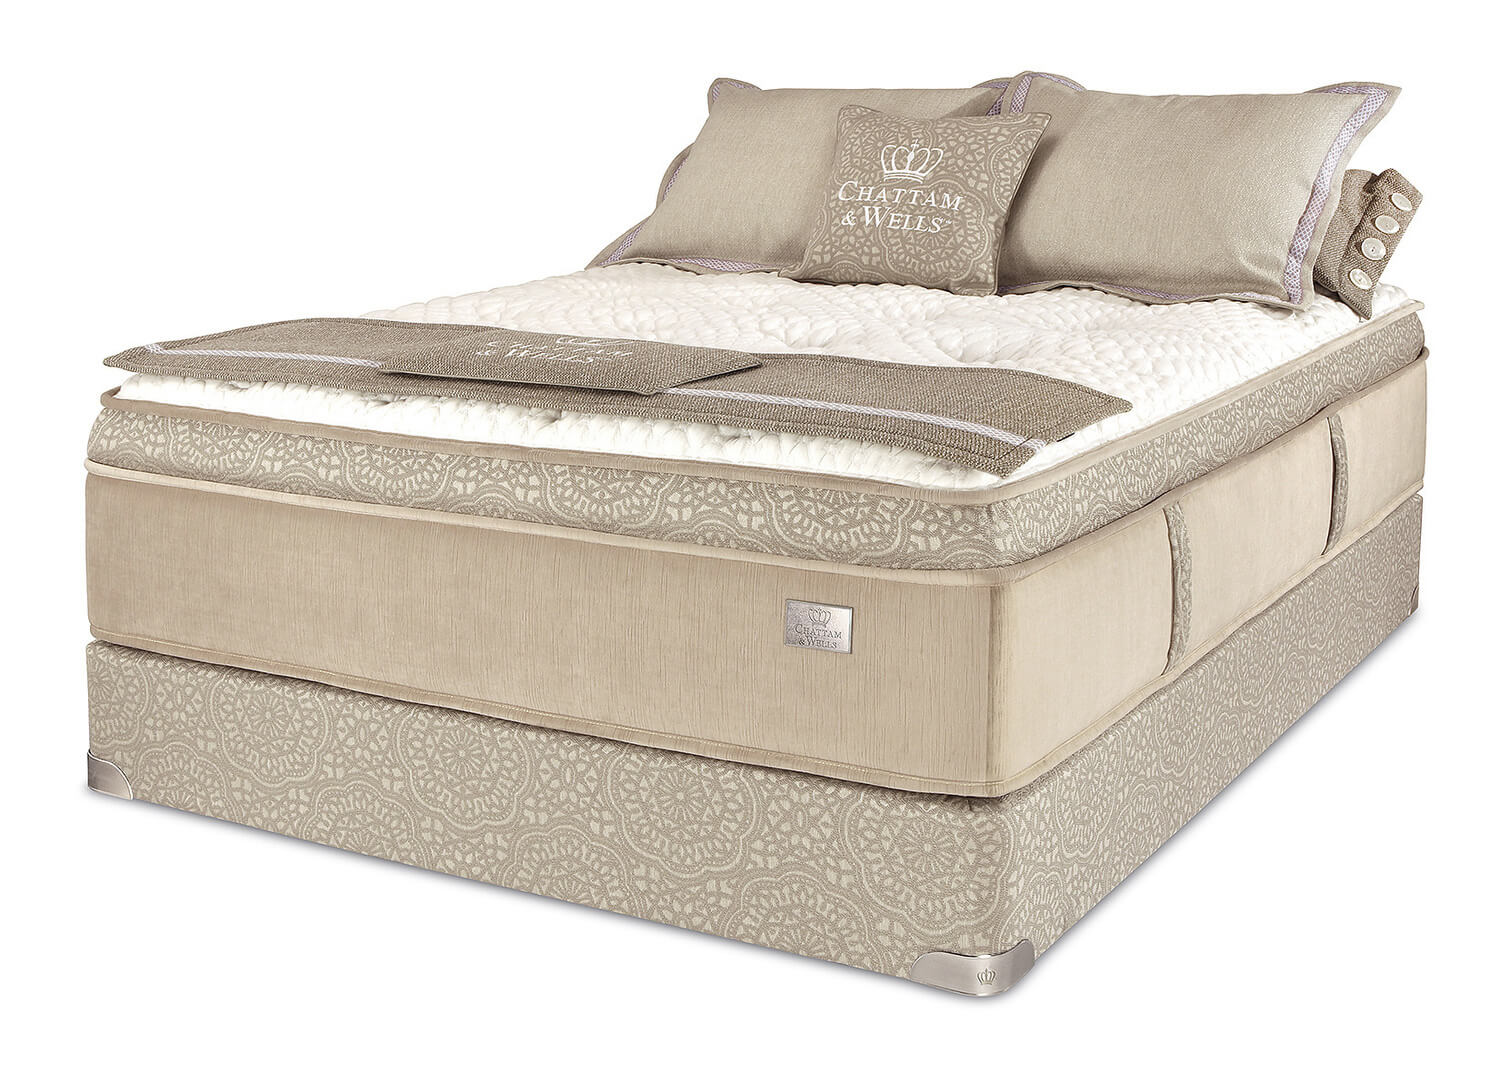 chattam and wells pillow top mattress